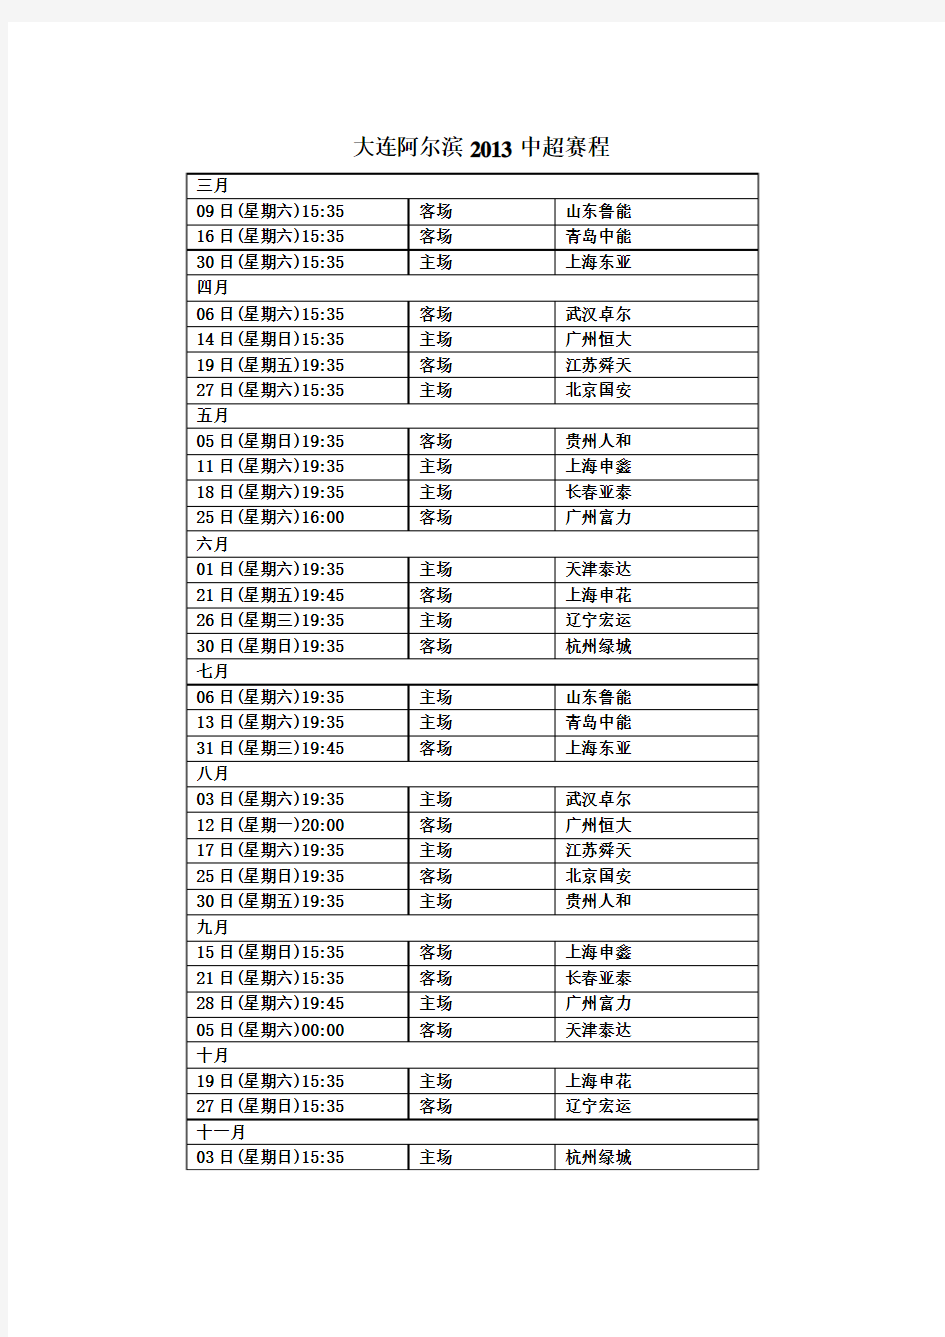 2013年大连阿尔滨中超赛程表(正式版)